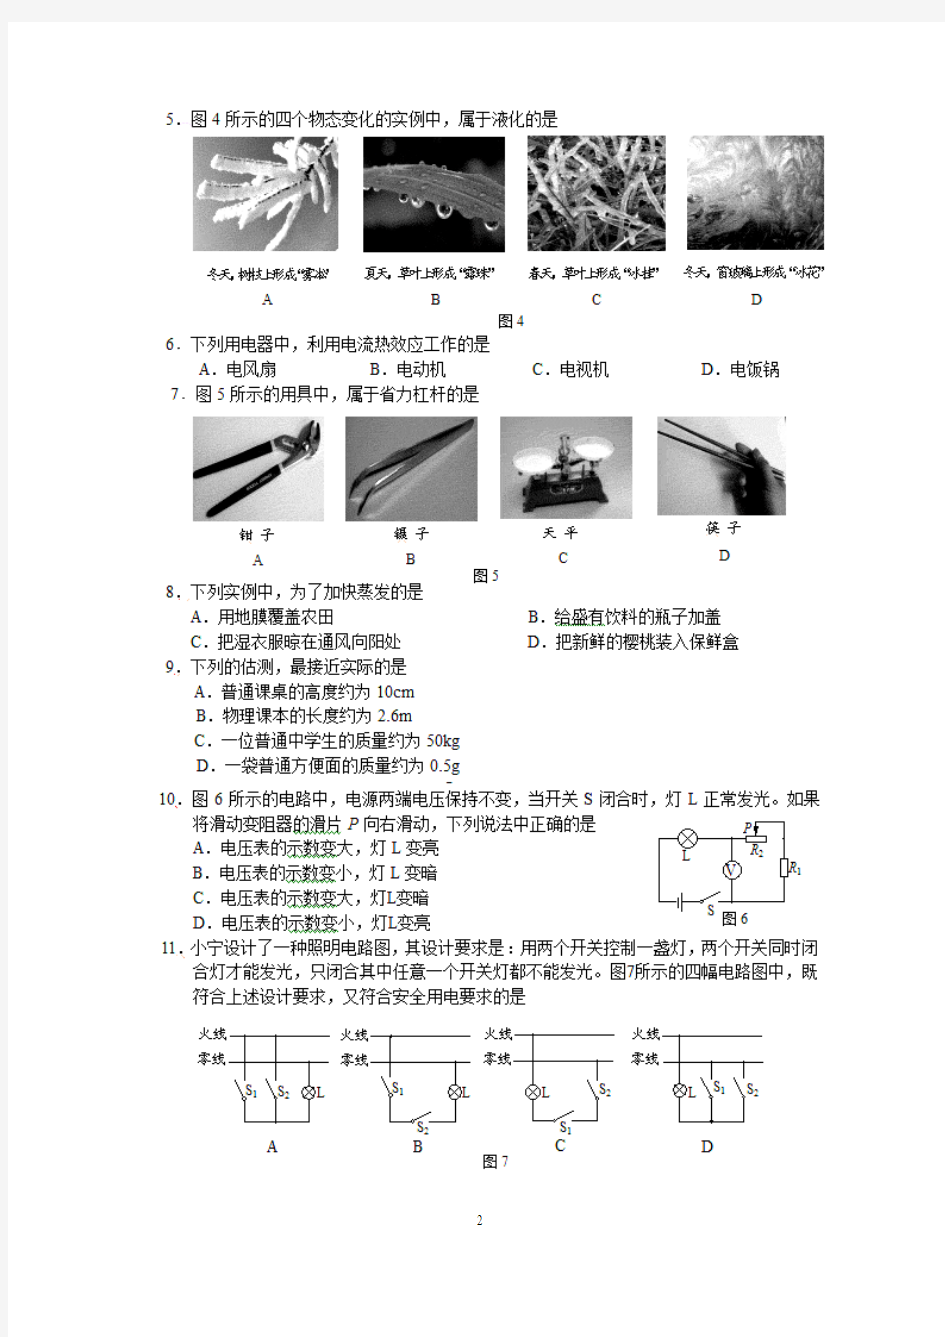 (免费)2010年北京中考物理试题及答案(试卷分析)[1]